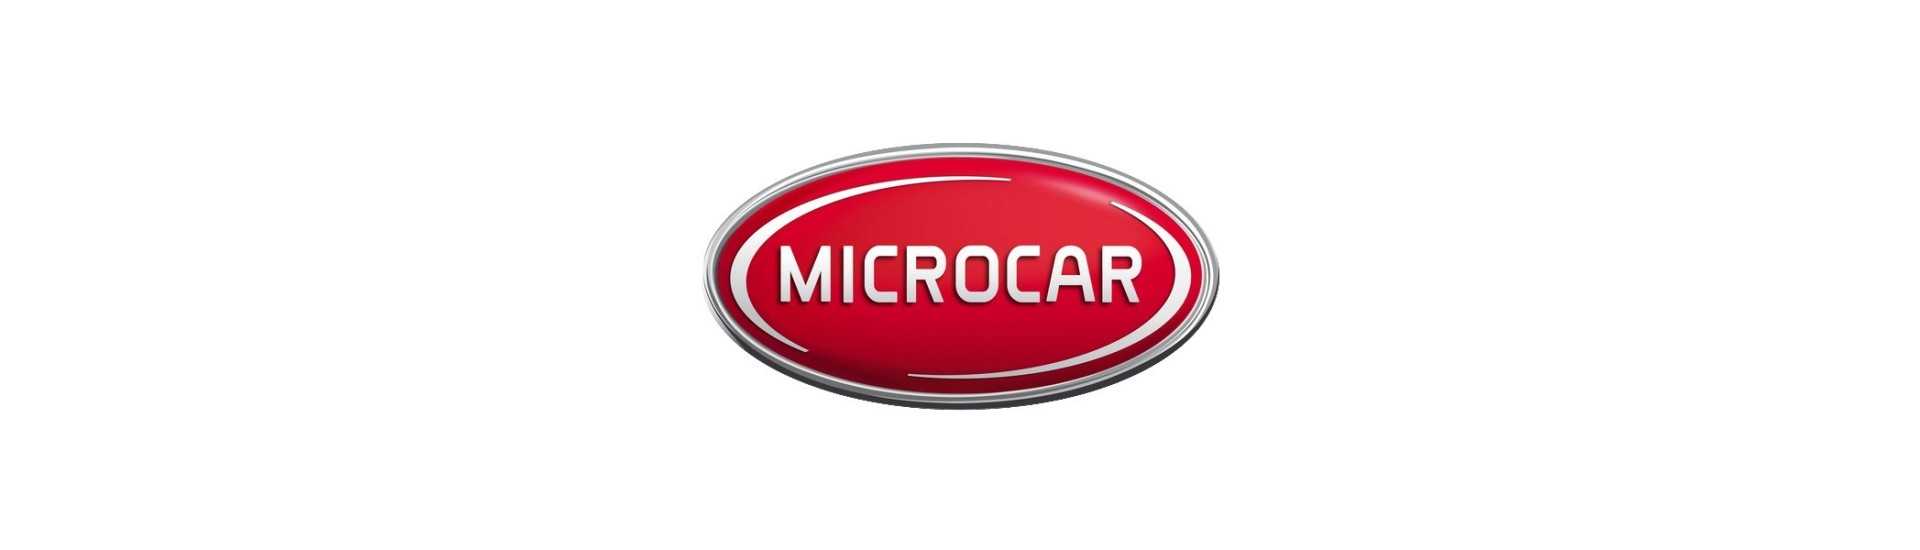 tambor de freio ao melhor preço para o carro sem uma permissão Microcar